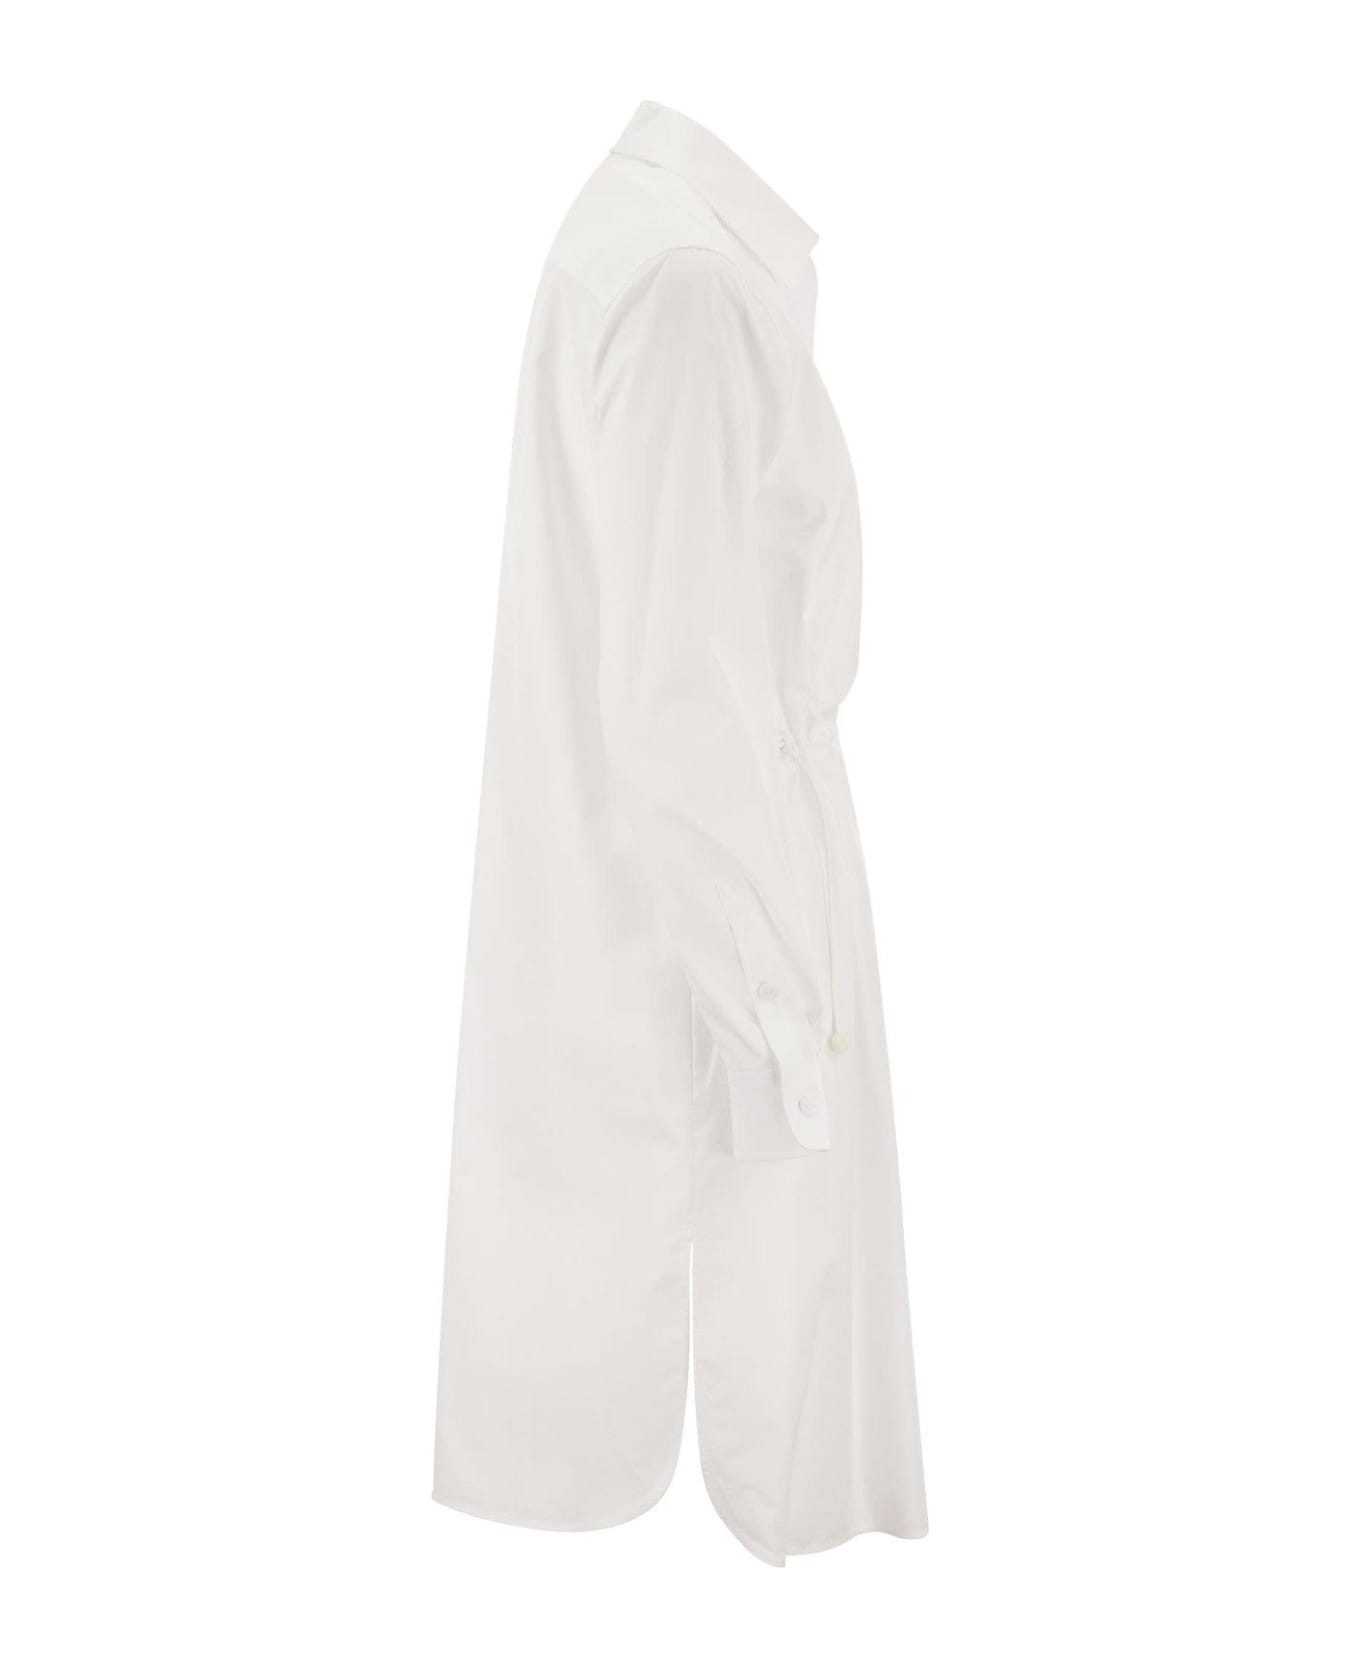 Max Mara Juanita Midi Shirt Dress - White